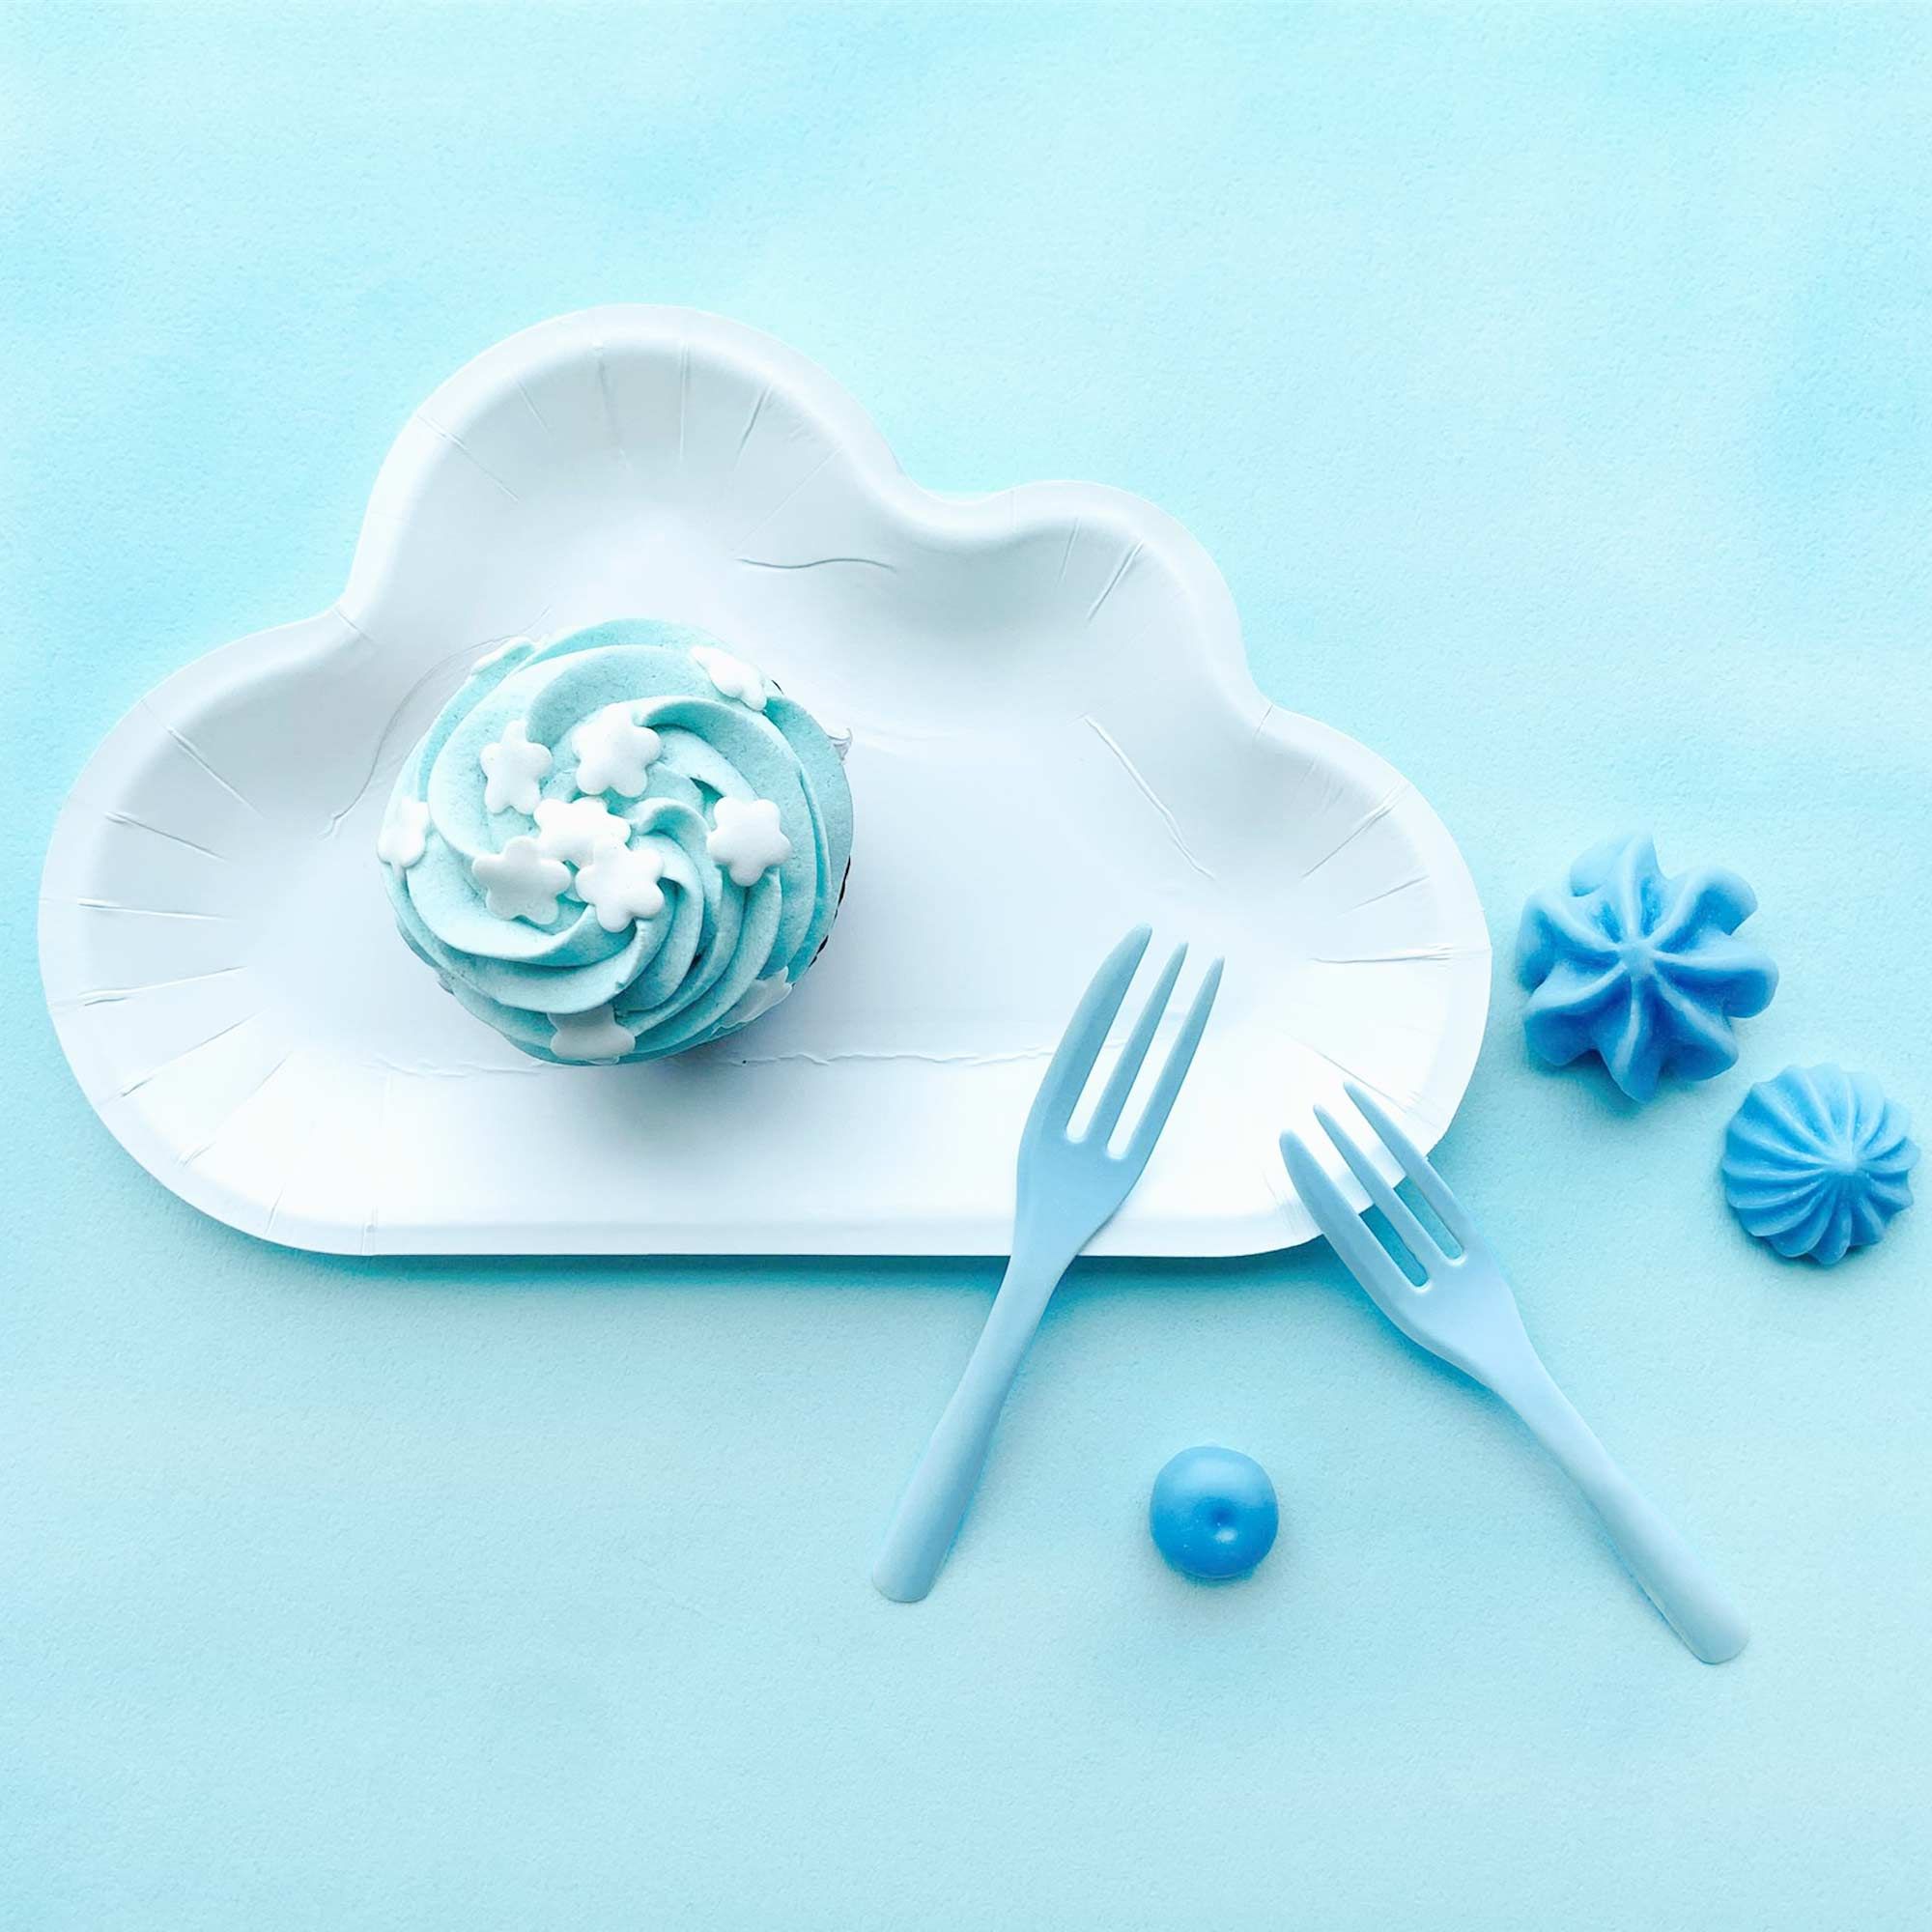 Der weiße wolkenförmige Teller in Kombination mit blauen Kuchengabeln schafft eine Atmosphäre, die an einen blauen Himmel mit flauschigen Wolken erinnert.